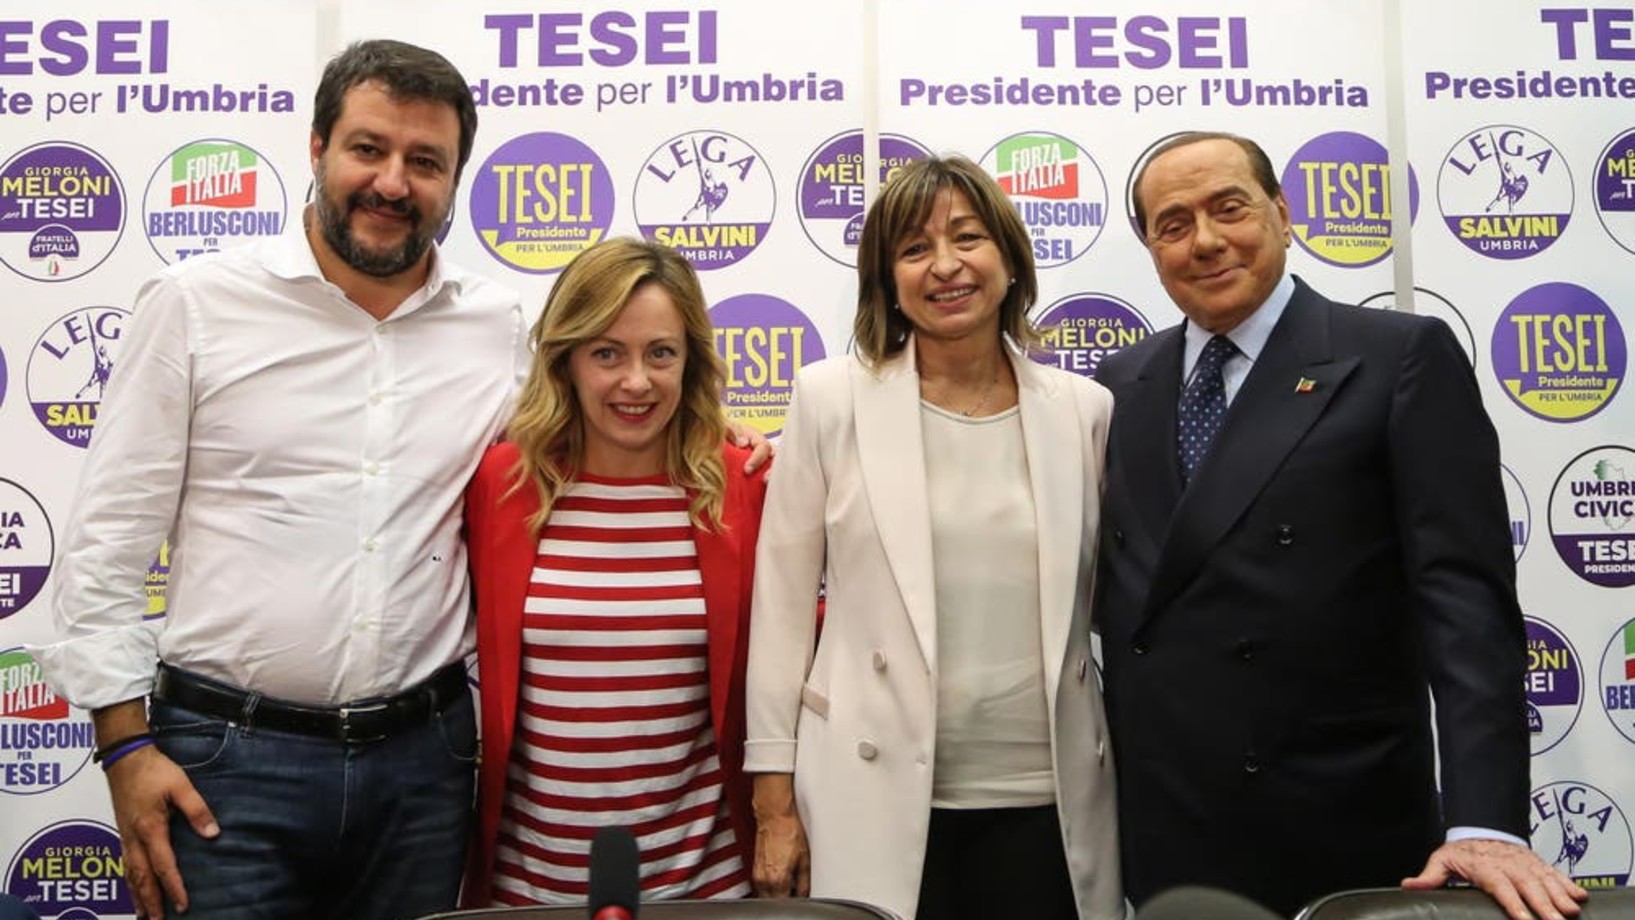 Die Sieger: Matteo Salvini, Giorgia Meloni, Donatella Tesei, Silvio Berlusconi (Foto: EPA/Matteo Crocchioni)